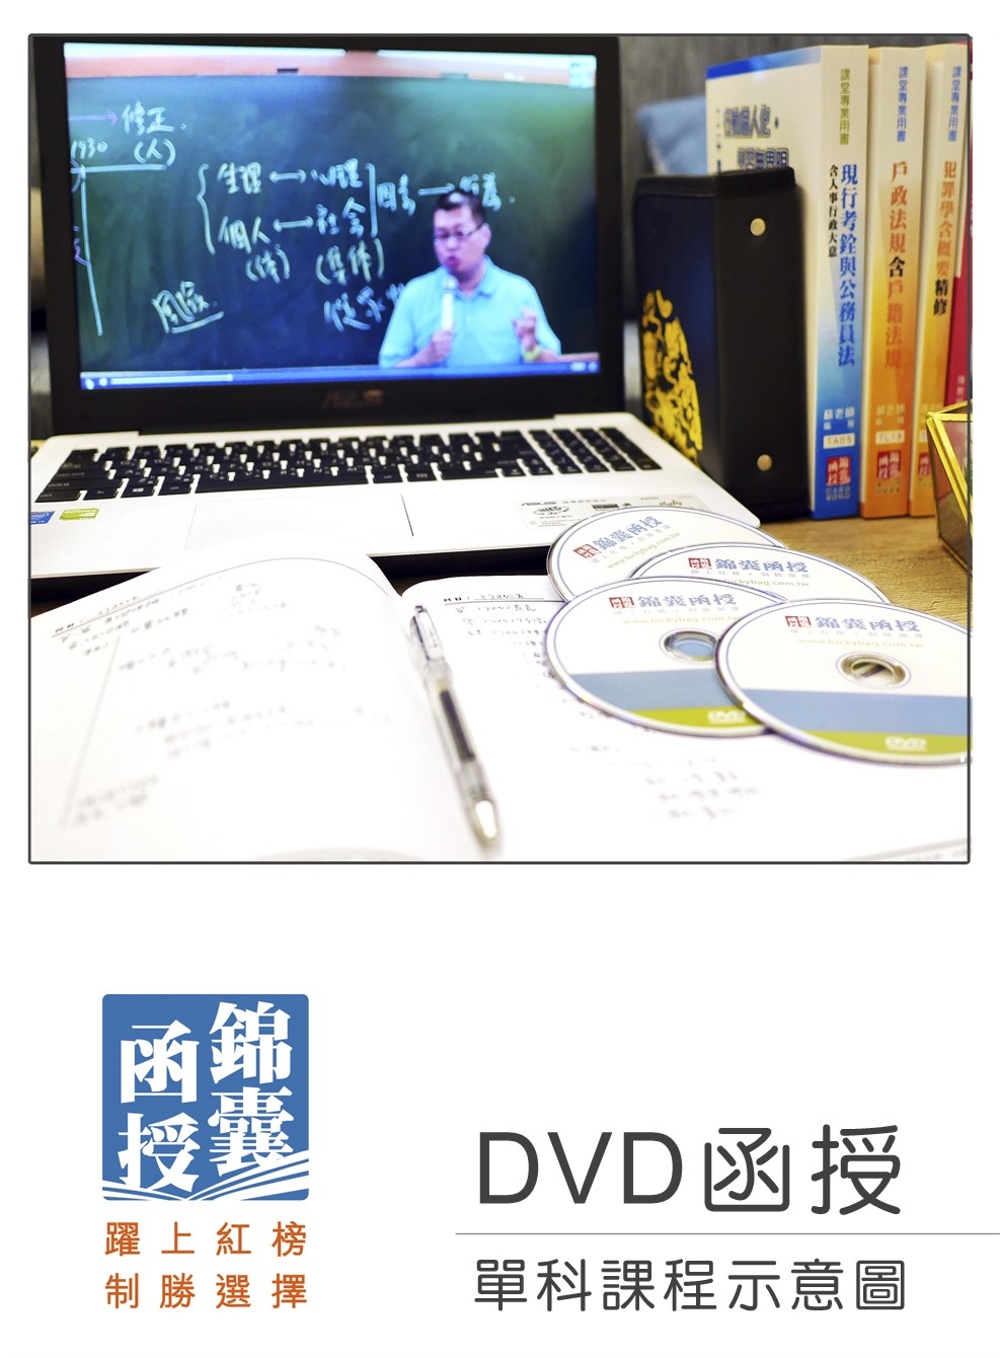 【DVD函授】資料通訊／資通網路：單科課程(109版)